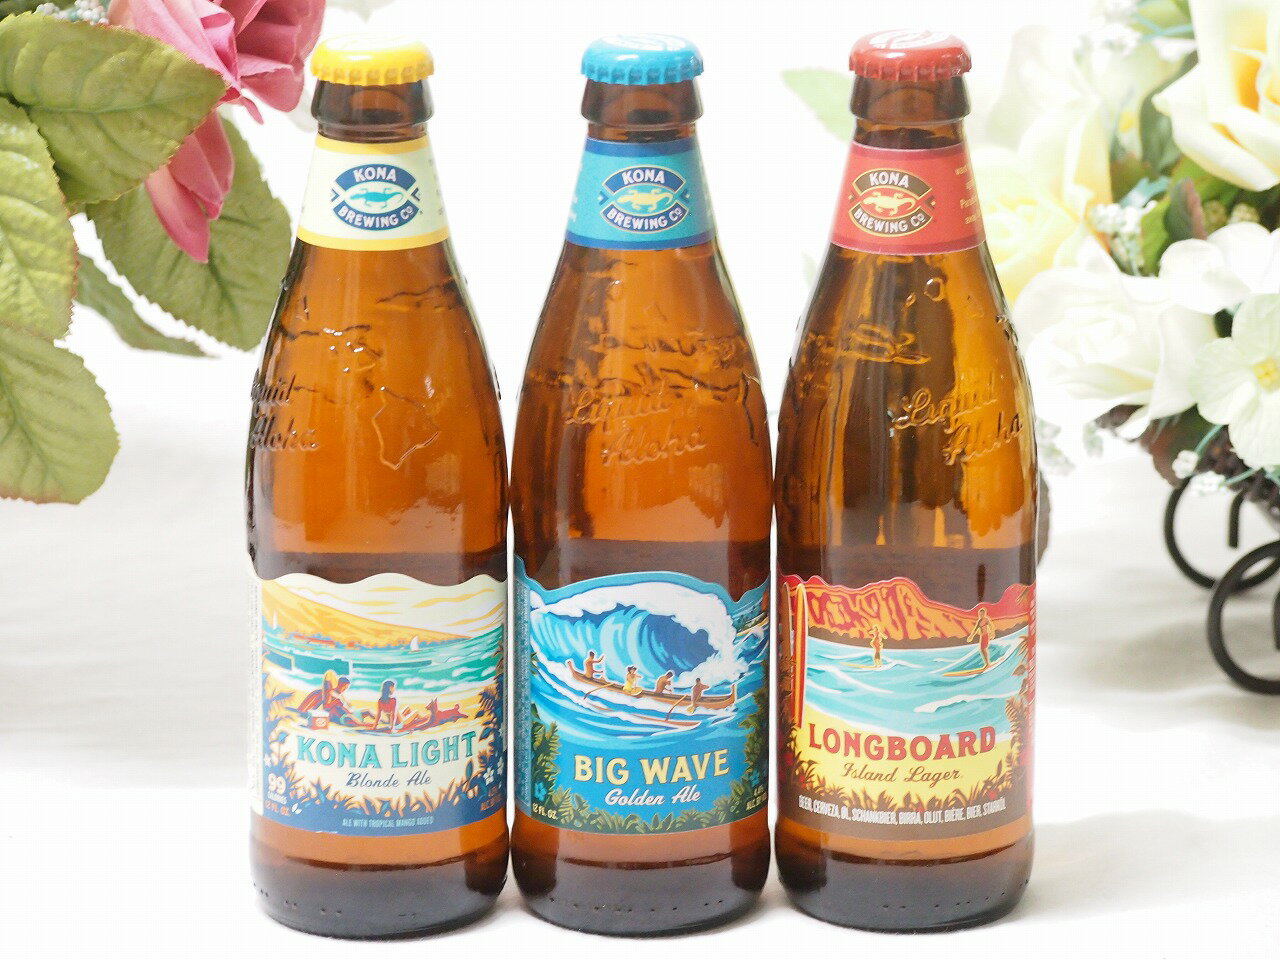 ハワイのコナビール飲み比べ3本セット(コナビールビックウェーブゴールデンエール瓶 コナビール ロングボートラガー瓶 コナビール コナライト ブロンドエール瓶 ) 355ml×3本